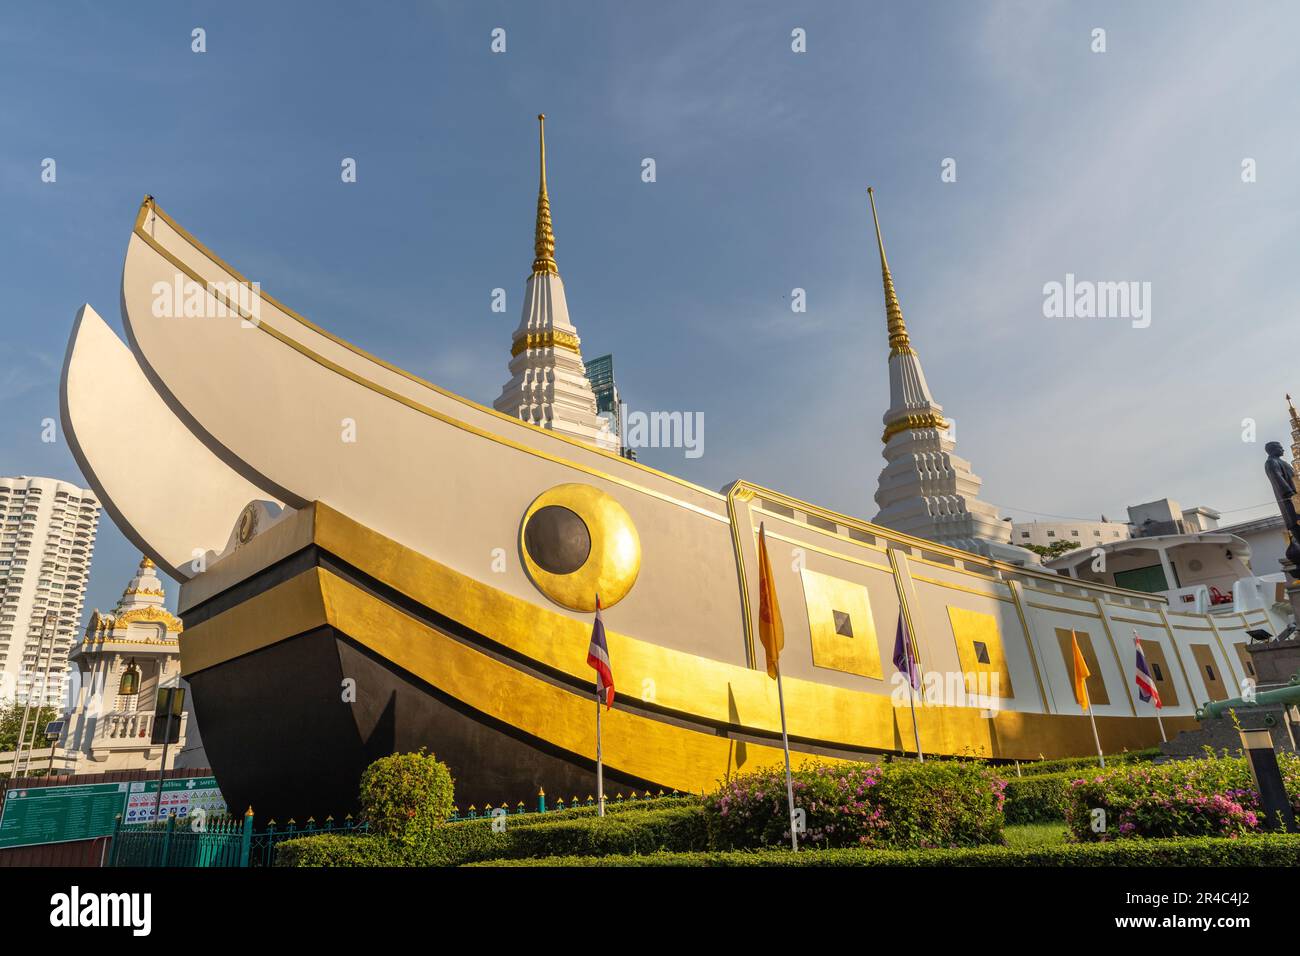 Chedi (stupa) en forme de malbouffe chinoise à Wat Yanniwa (le Temple du bateau), temple bouddhiste thaïlandais (wat) dans le quartier de Sathon, Bangkok, Thaïlande Banque D'Images